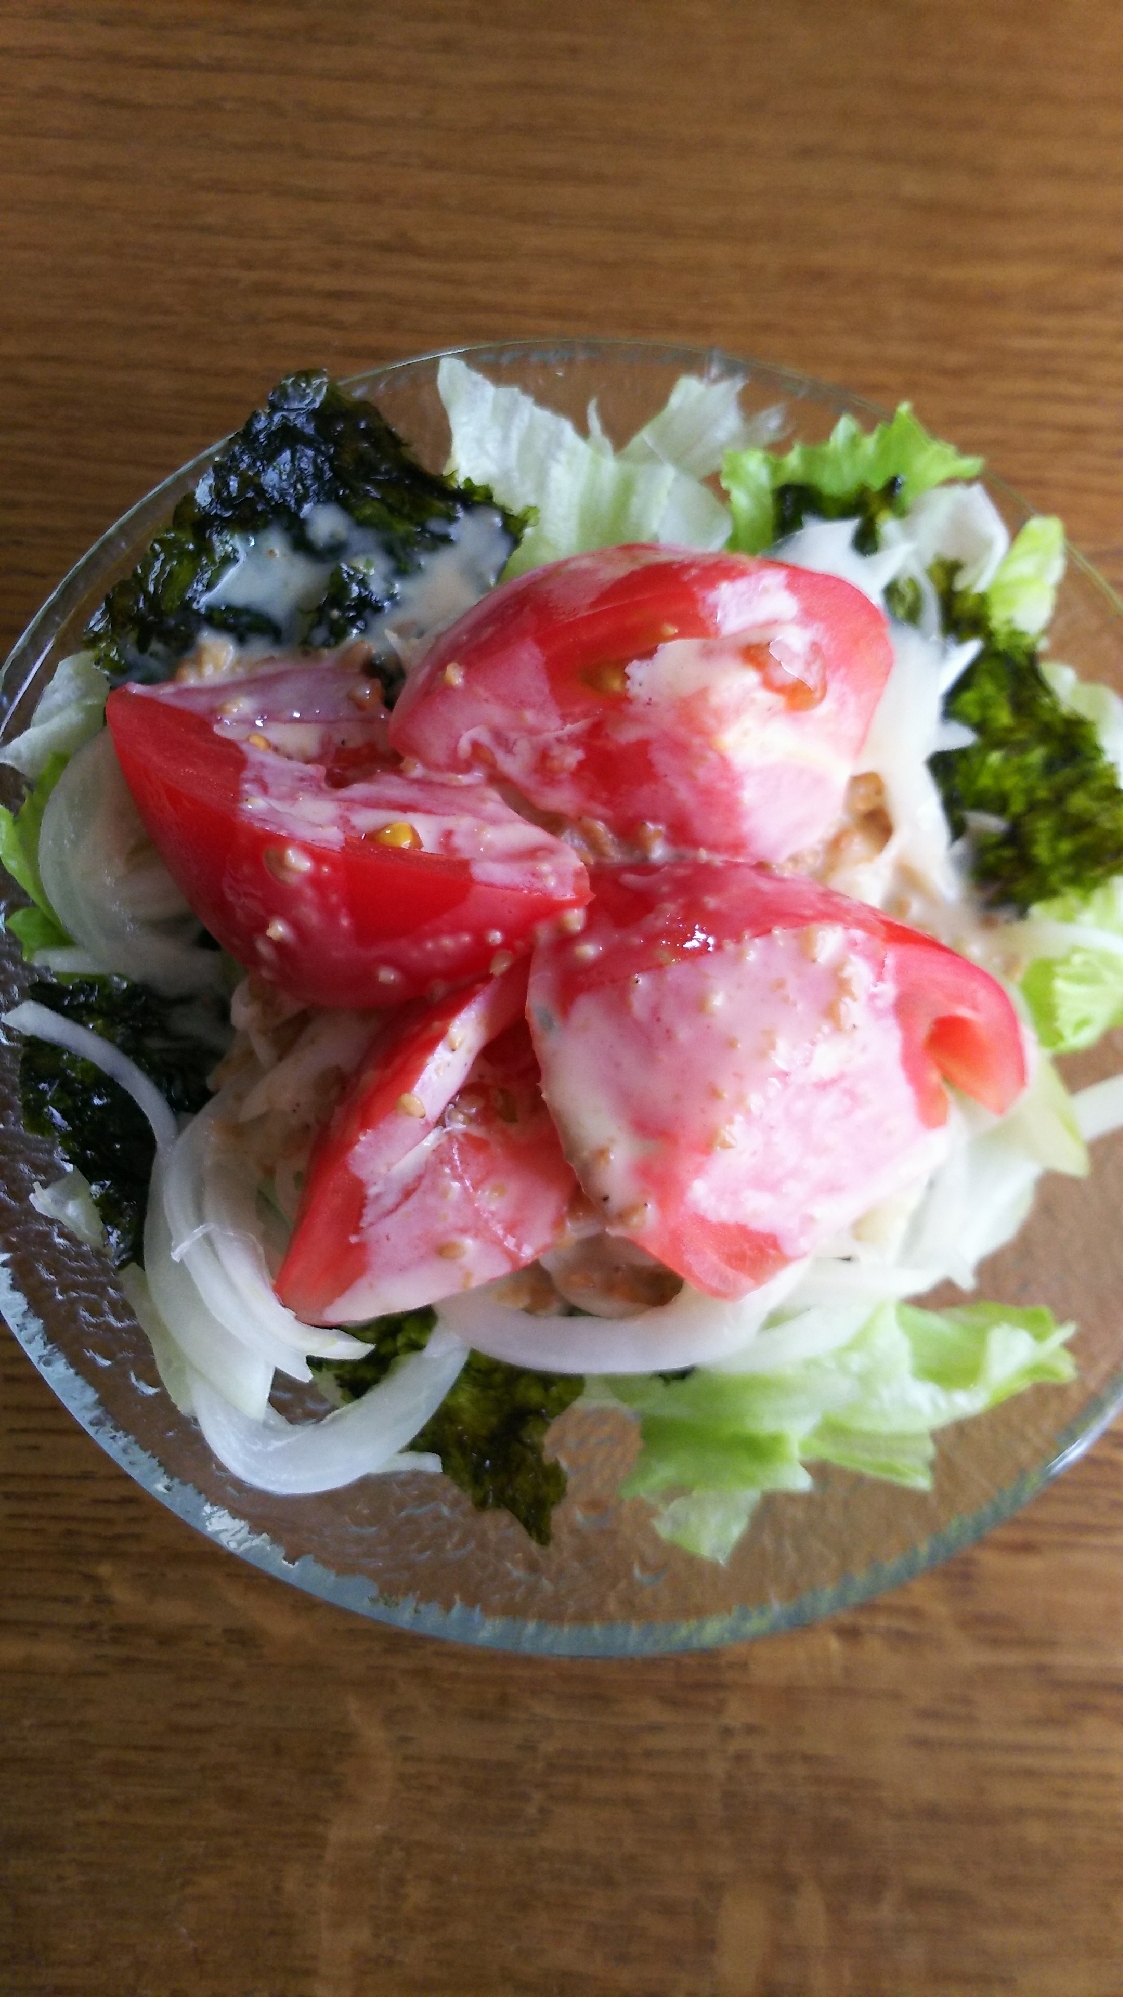 レタス&玉ねぎ&トマトの海苔サラダ